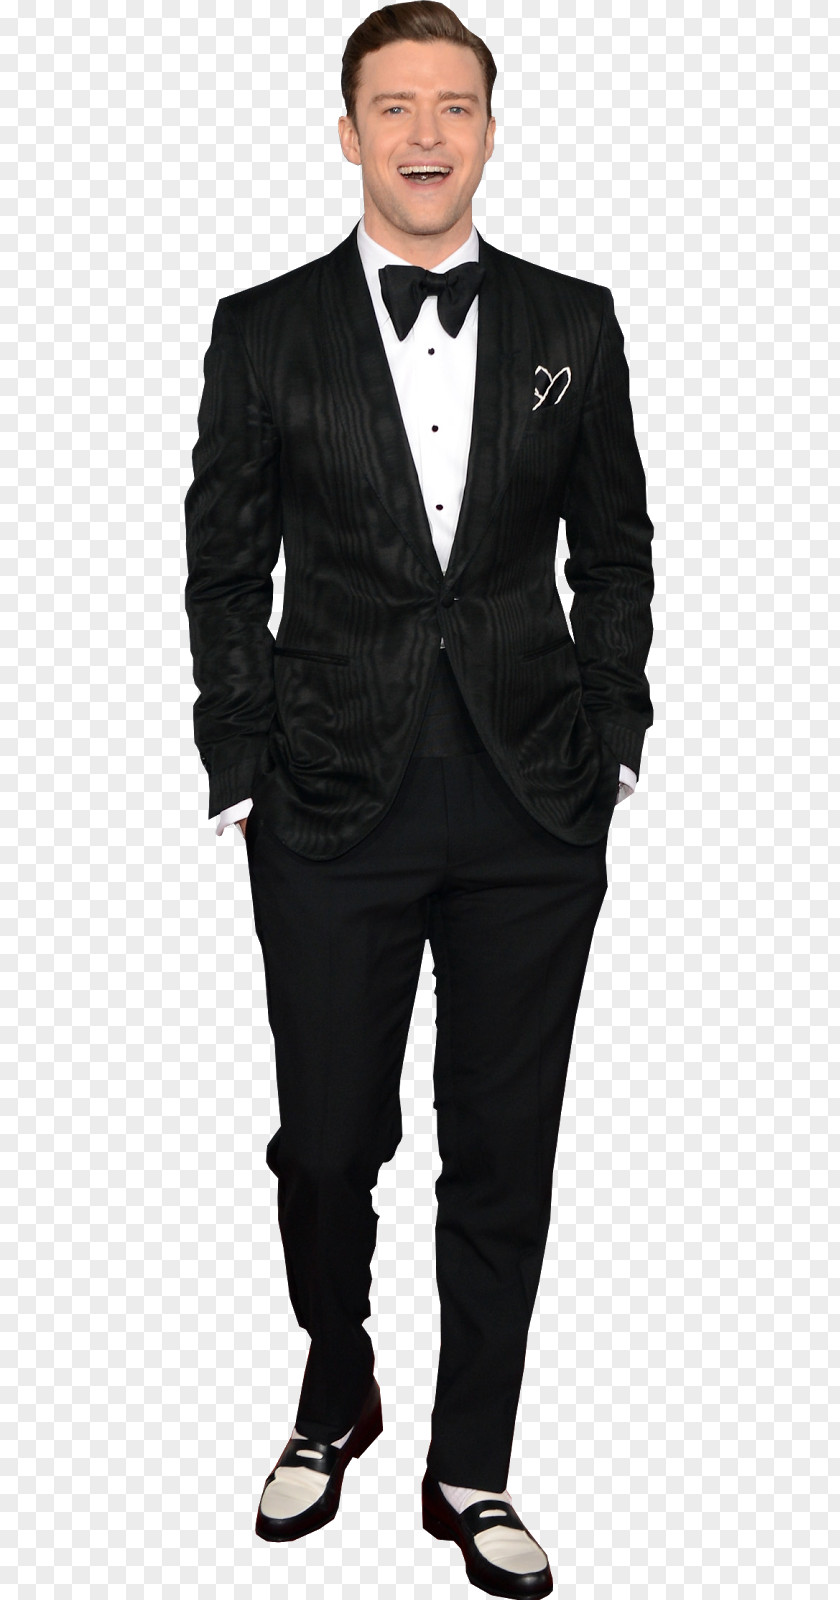 Justin Timberlake Tuxedo Tobacco Smoking Jacket Black Tie PNG